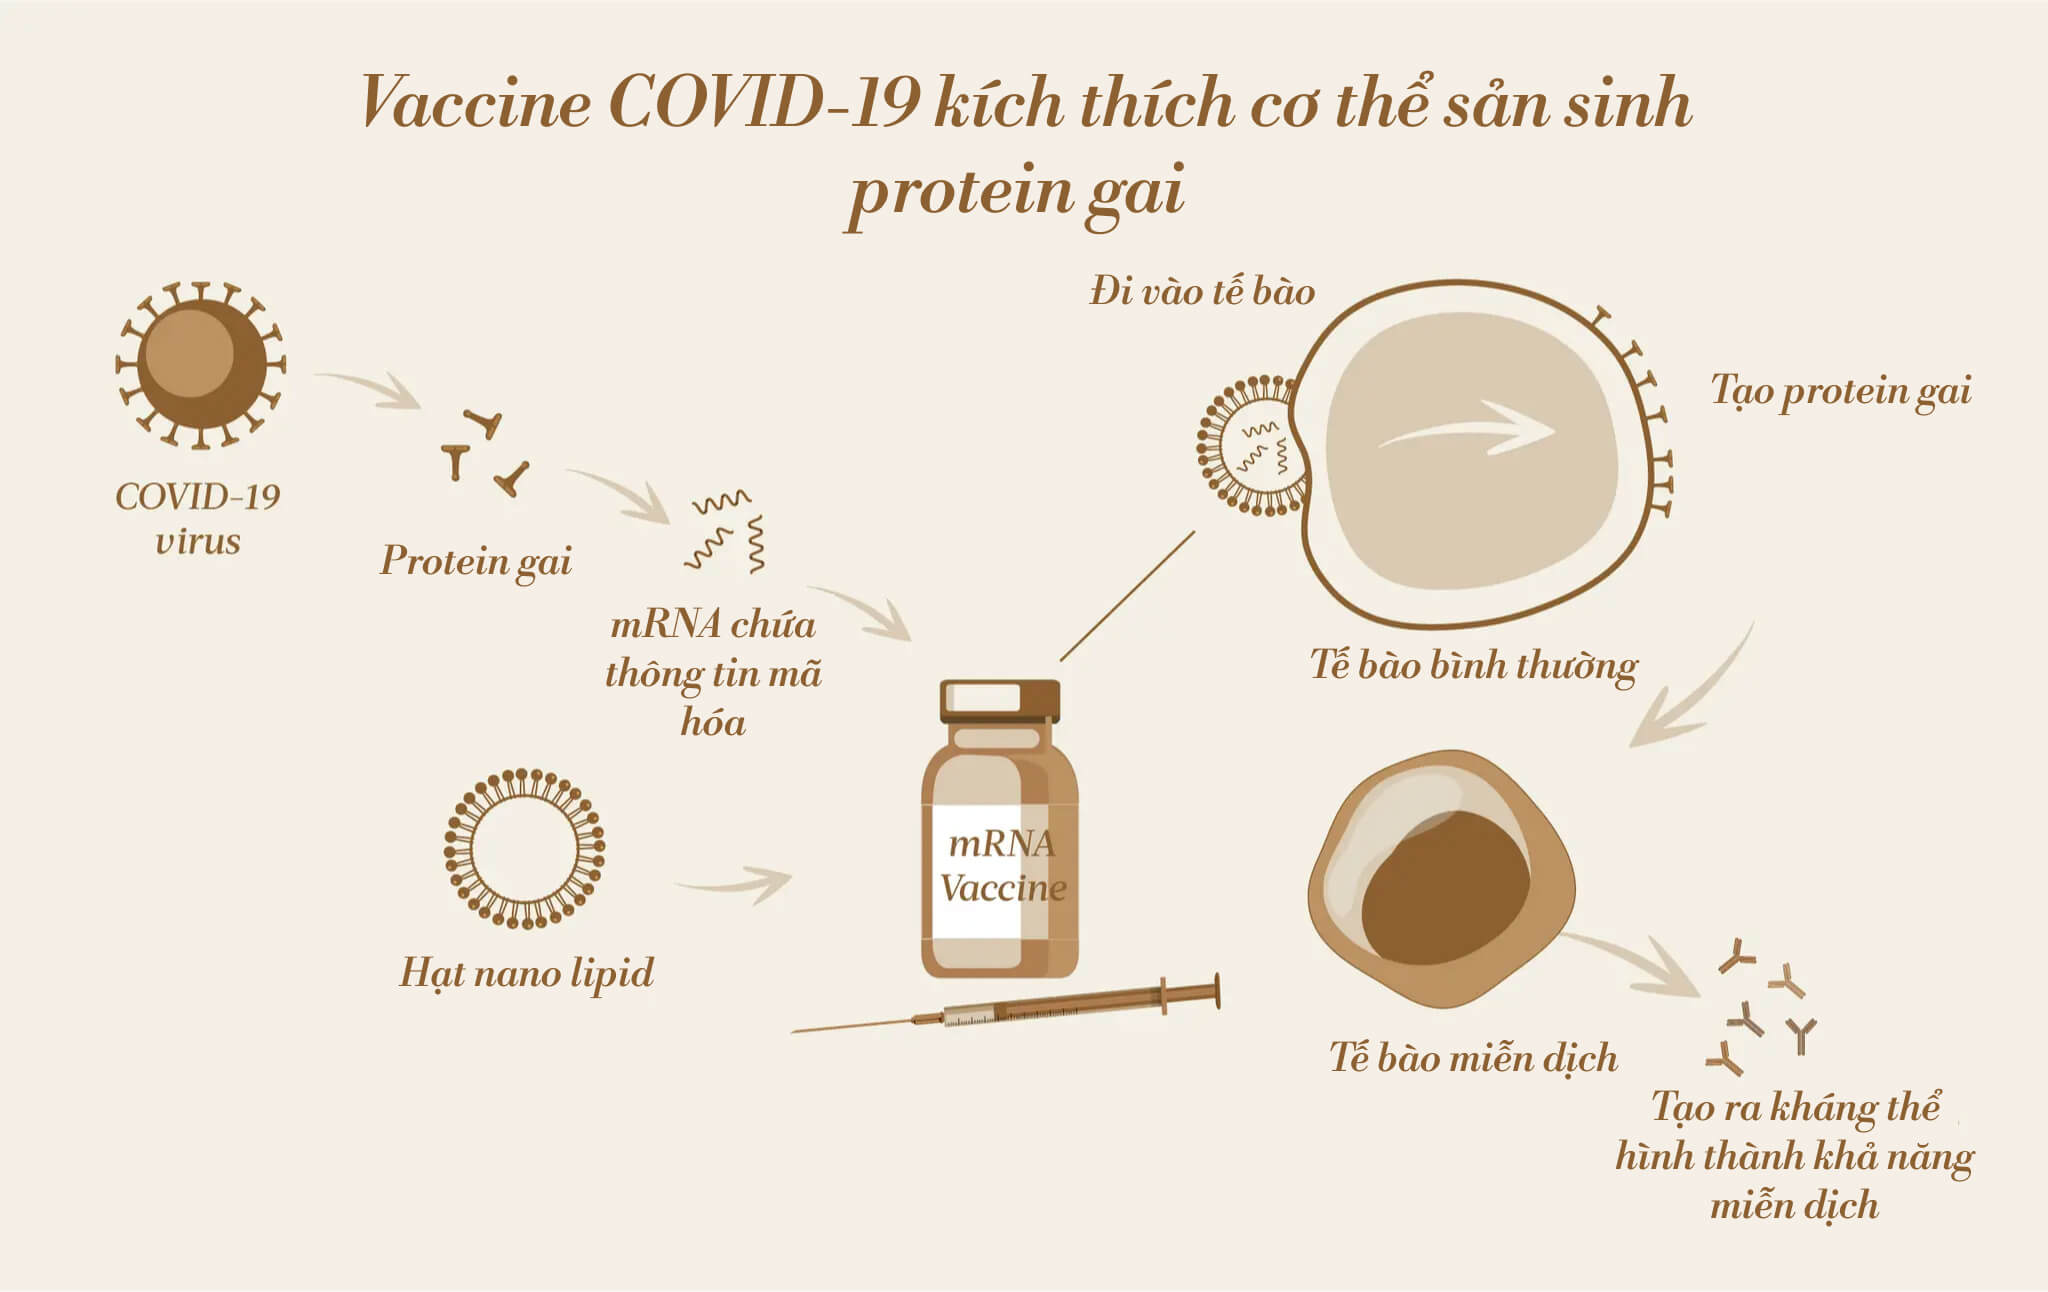 Vaccine mRNA COVID-19 kích thích cơ thể tạo ra các protein gai, từ đó kích thích hệ miễn dịch tạo ra khả năng miễn dịch. (Ảnh: The Epoch Times, Shutterstock)